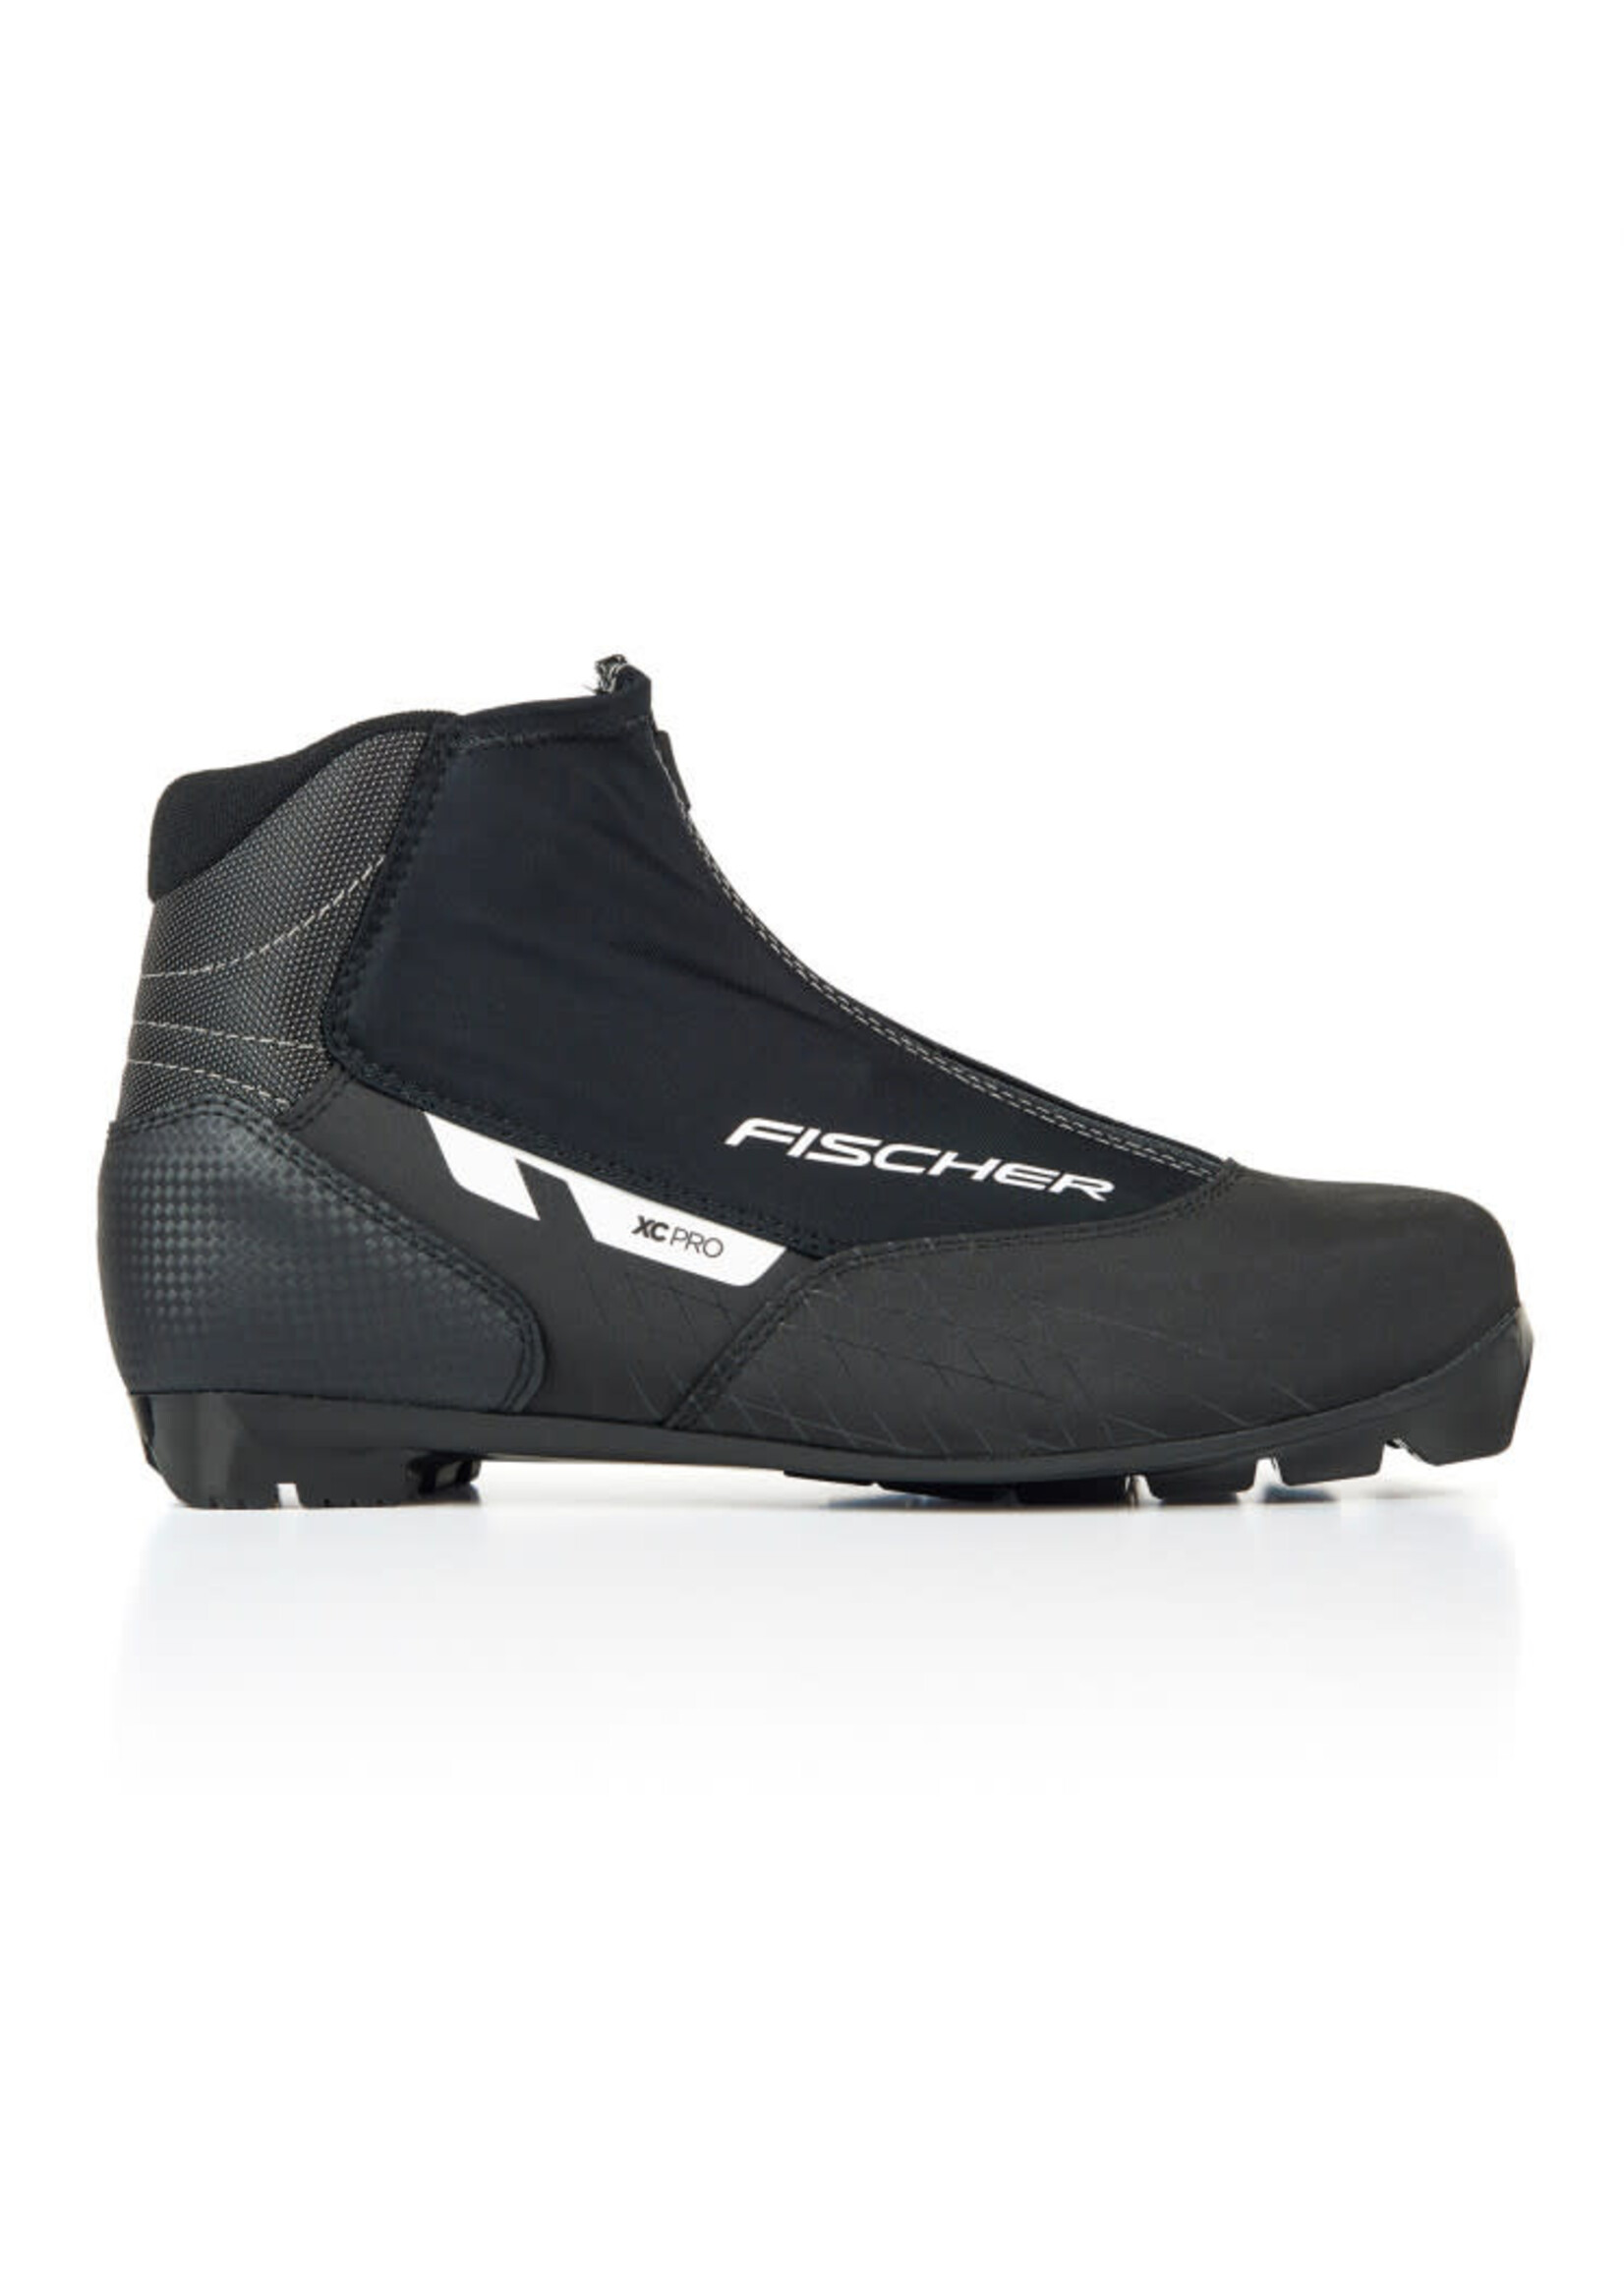 Fischer Fischer XC Pro Black Cross Country Ski Boots